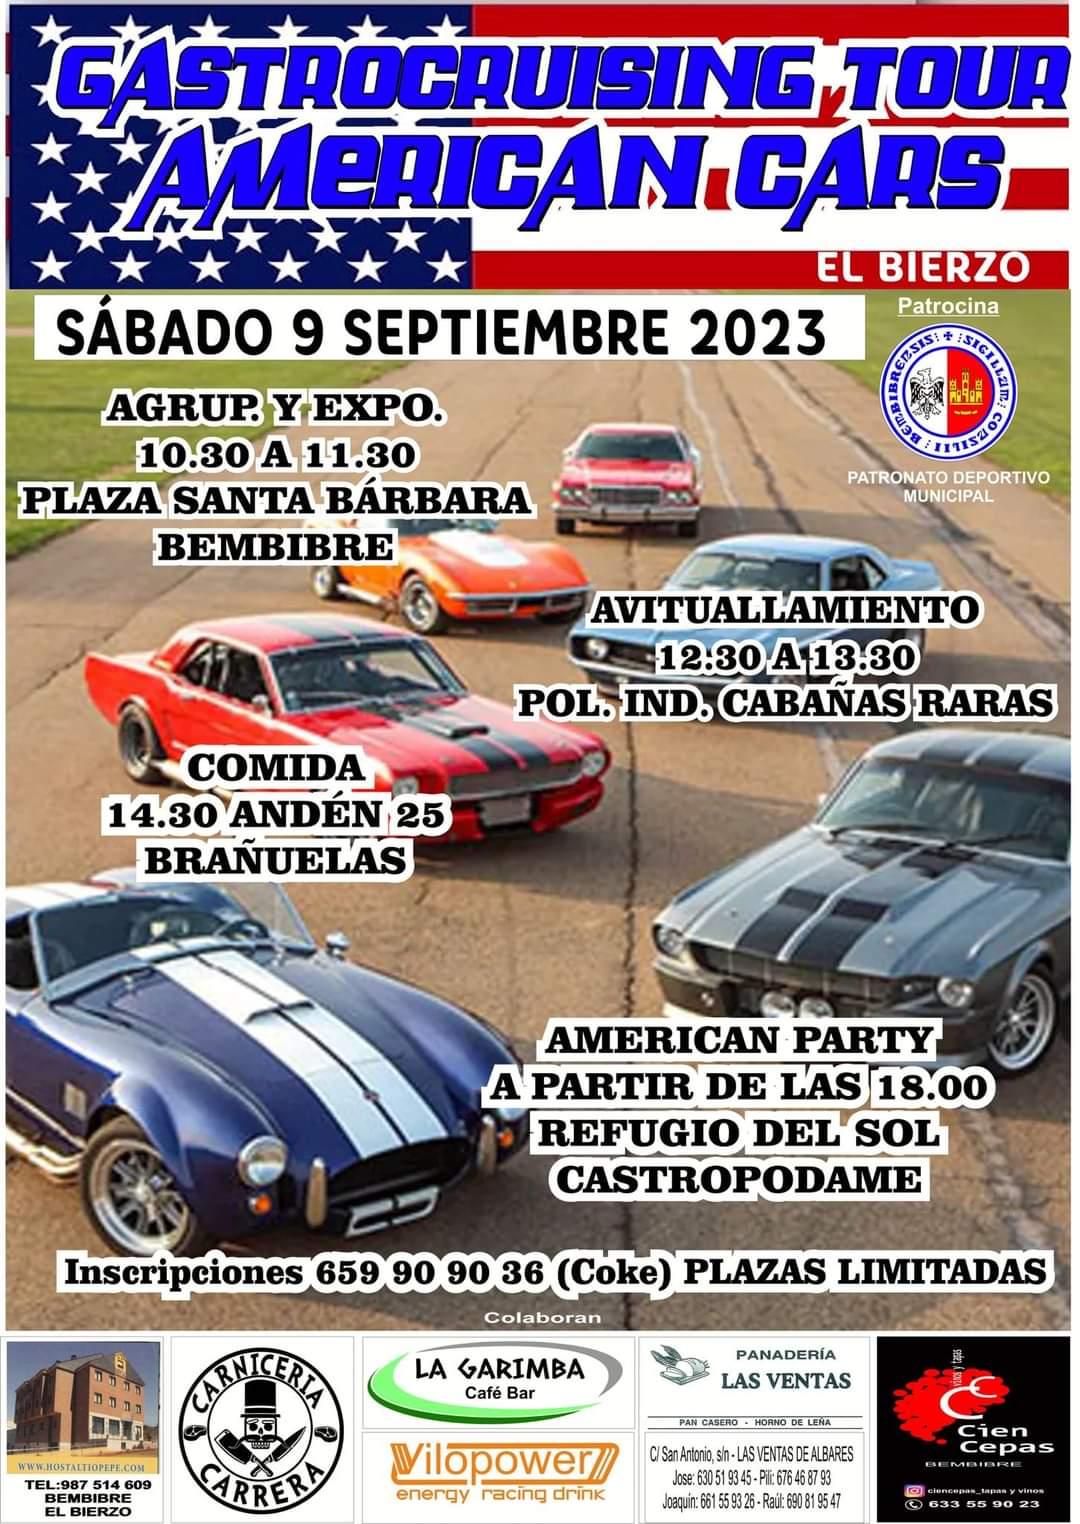 La Gastrocruising Tour de American Cars se paseará por Bembibre el sábado 9 de septiembre 2